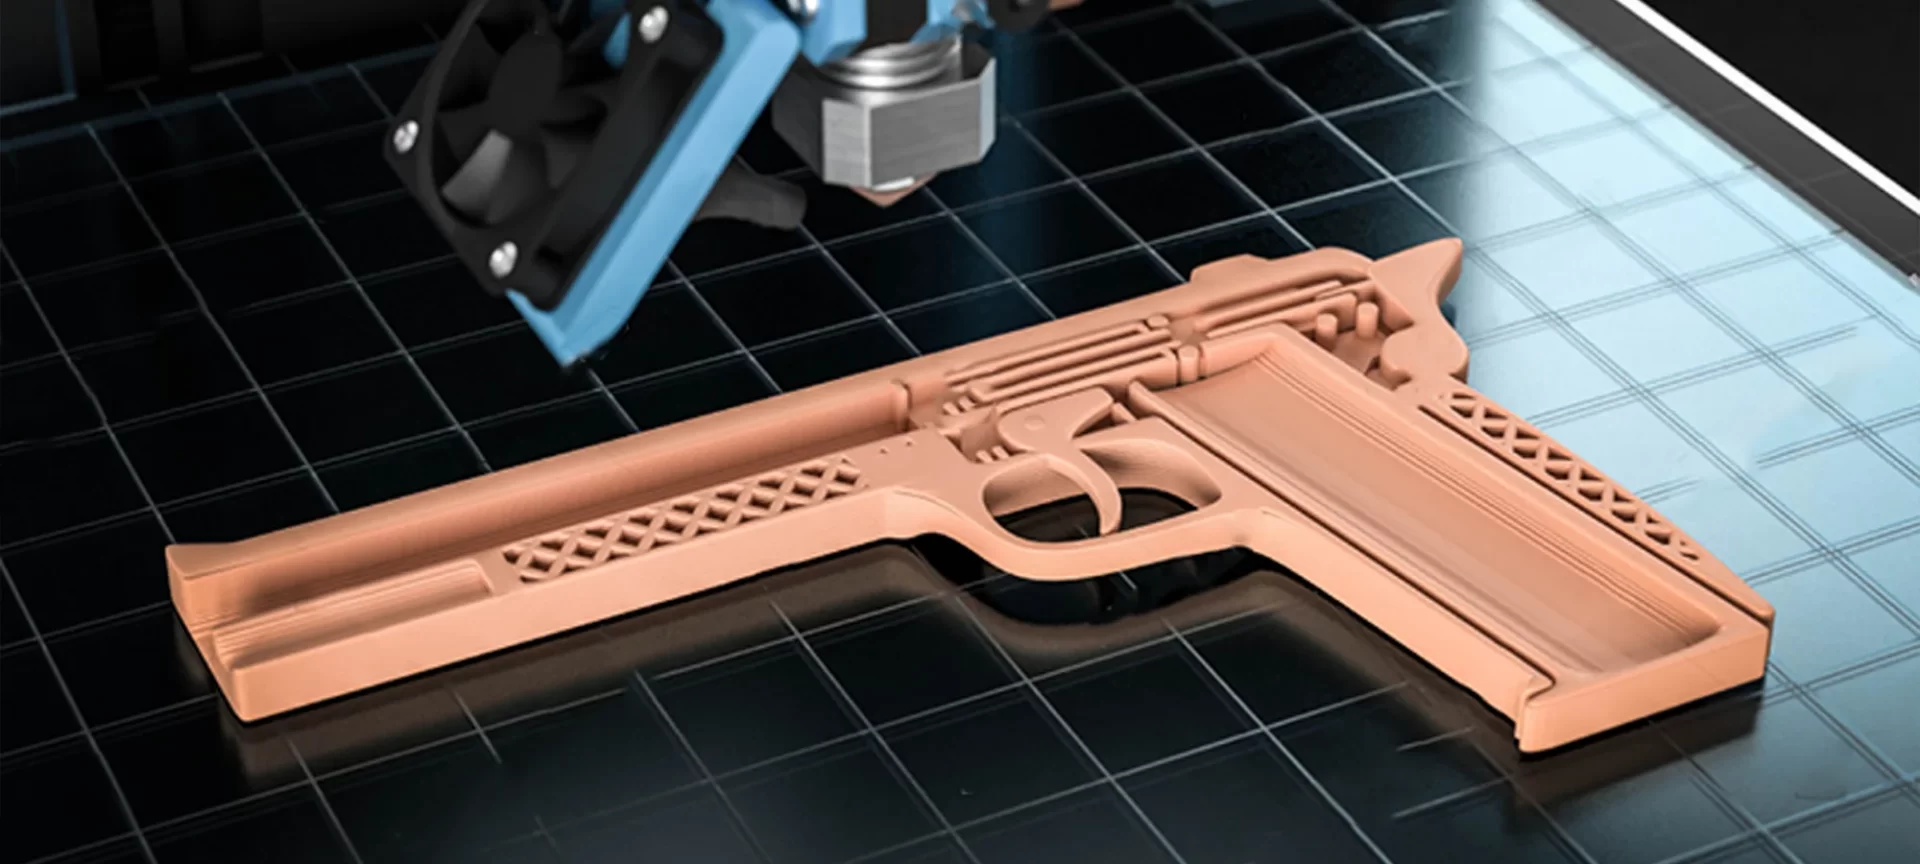 3D printed gun